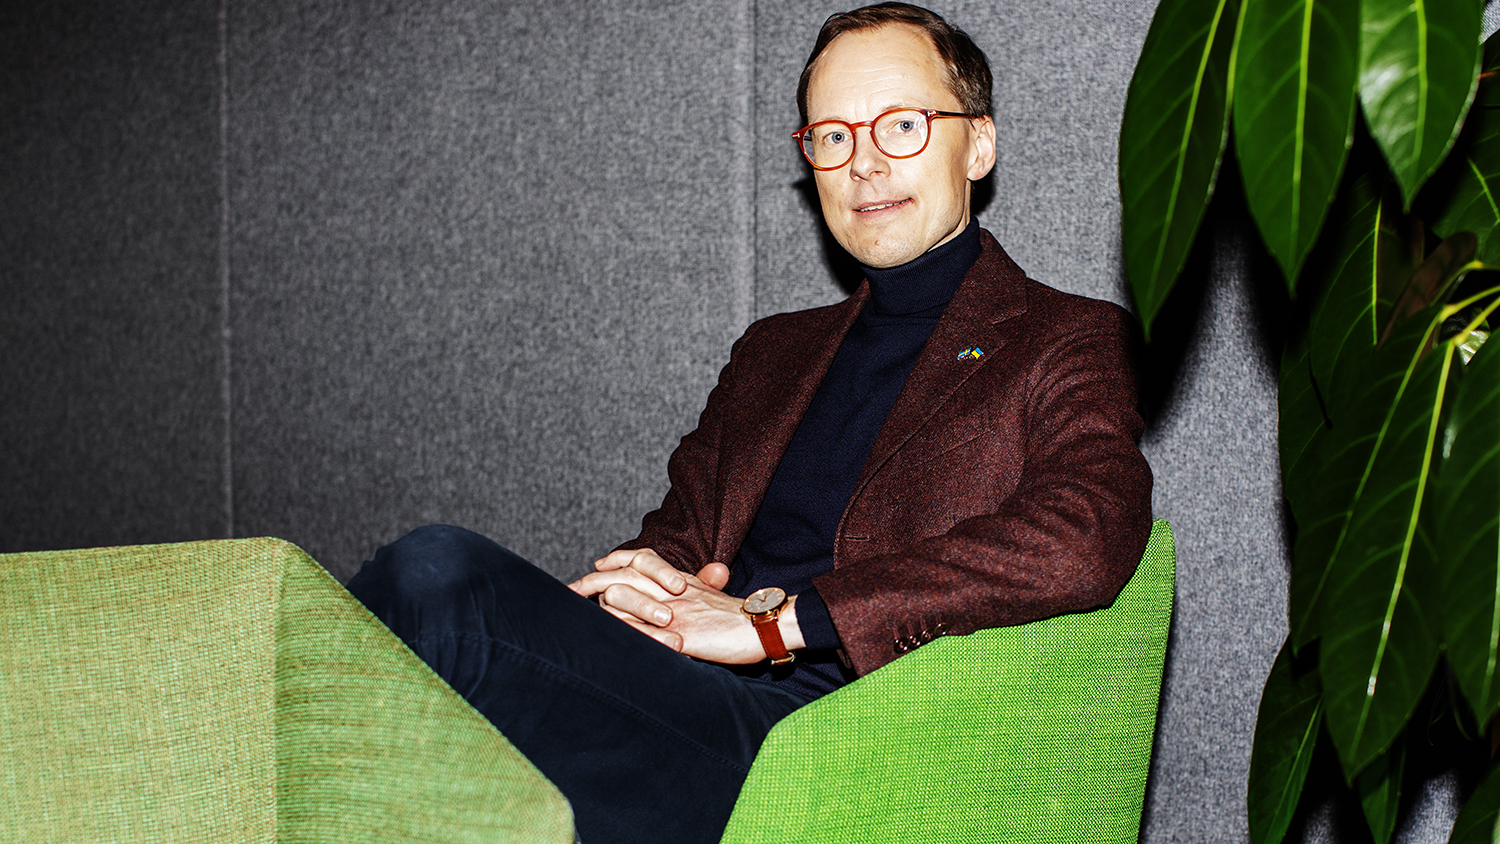 Mats Persson sitter i en grön fåtölj mot en grå vägg.